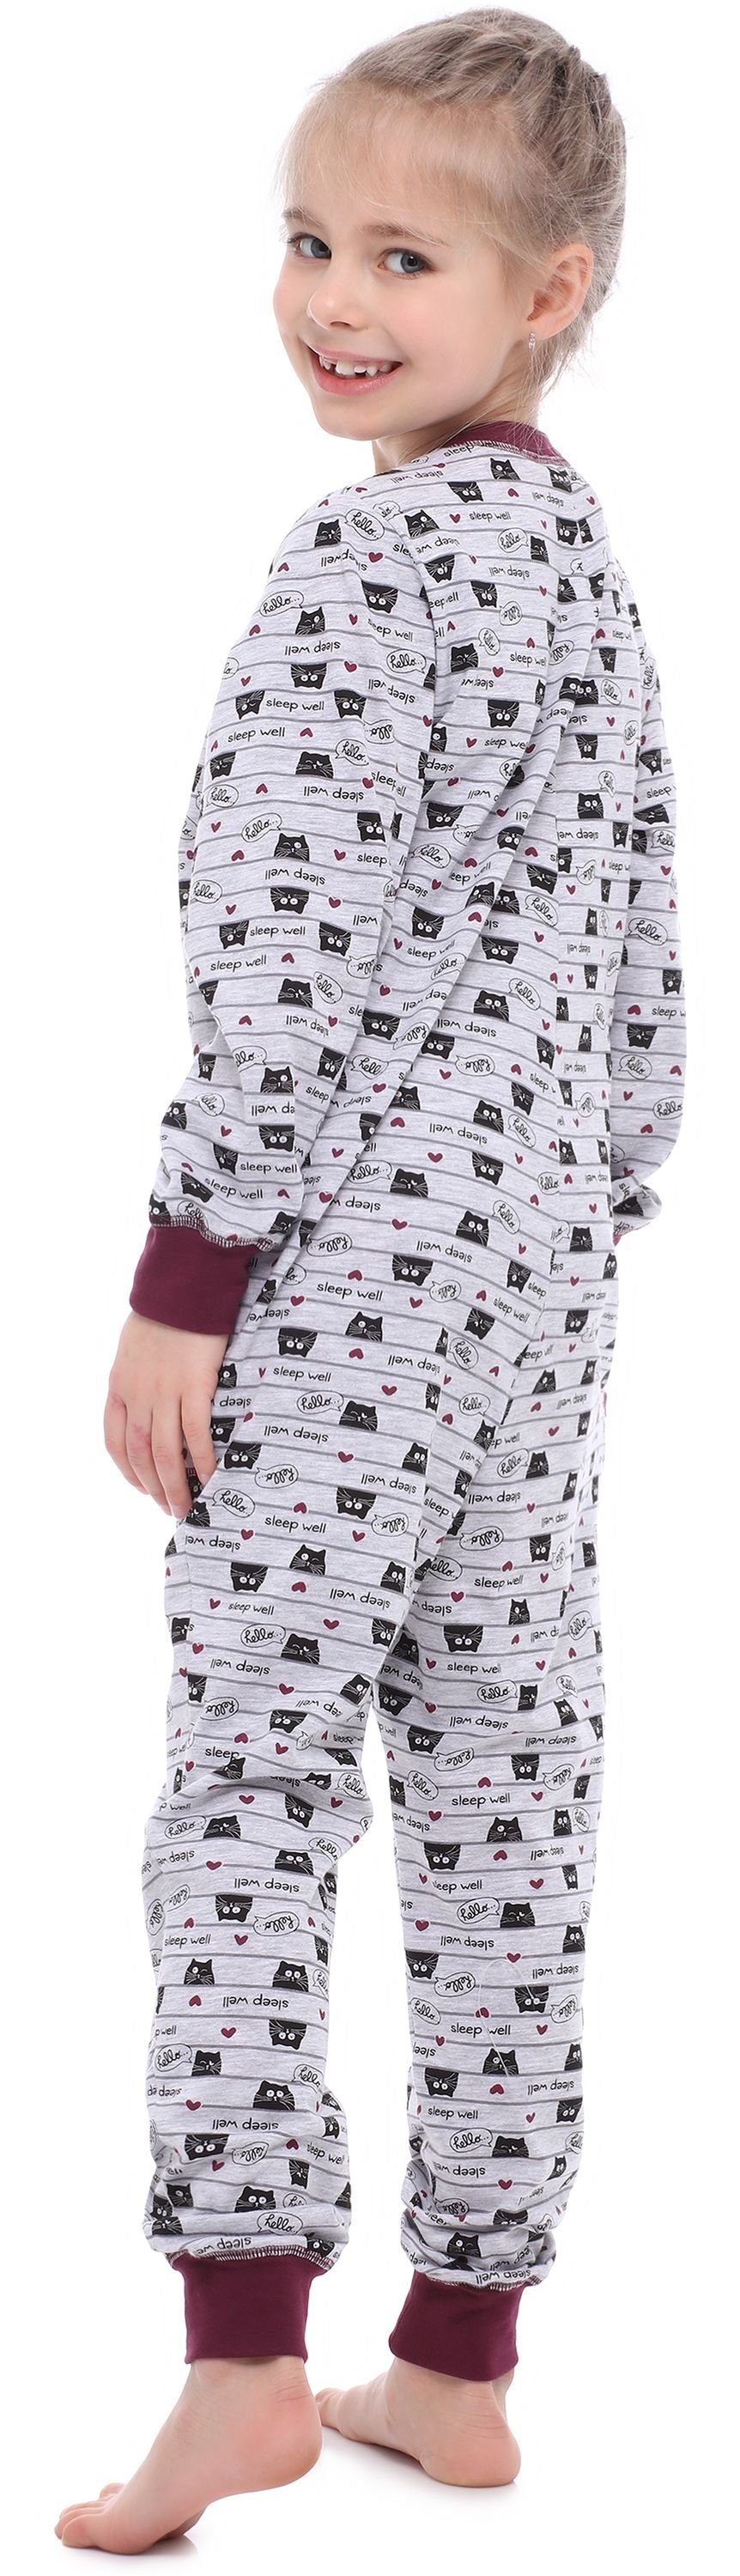 Mädchen Katzen Melange Style Jumpsuit Wein Schlafanzug MS10-186 Schlafanzug Merry